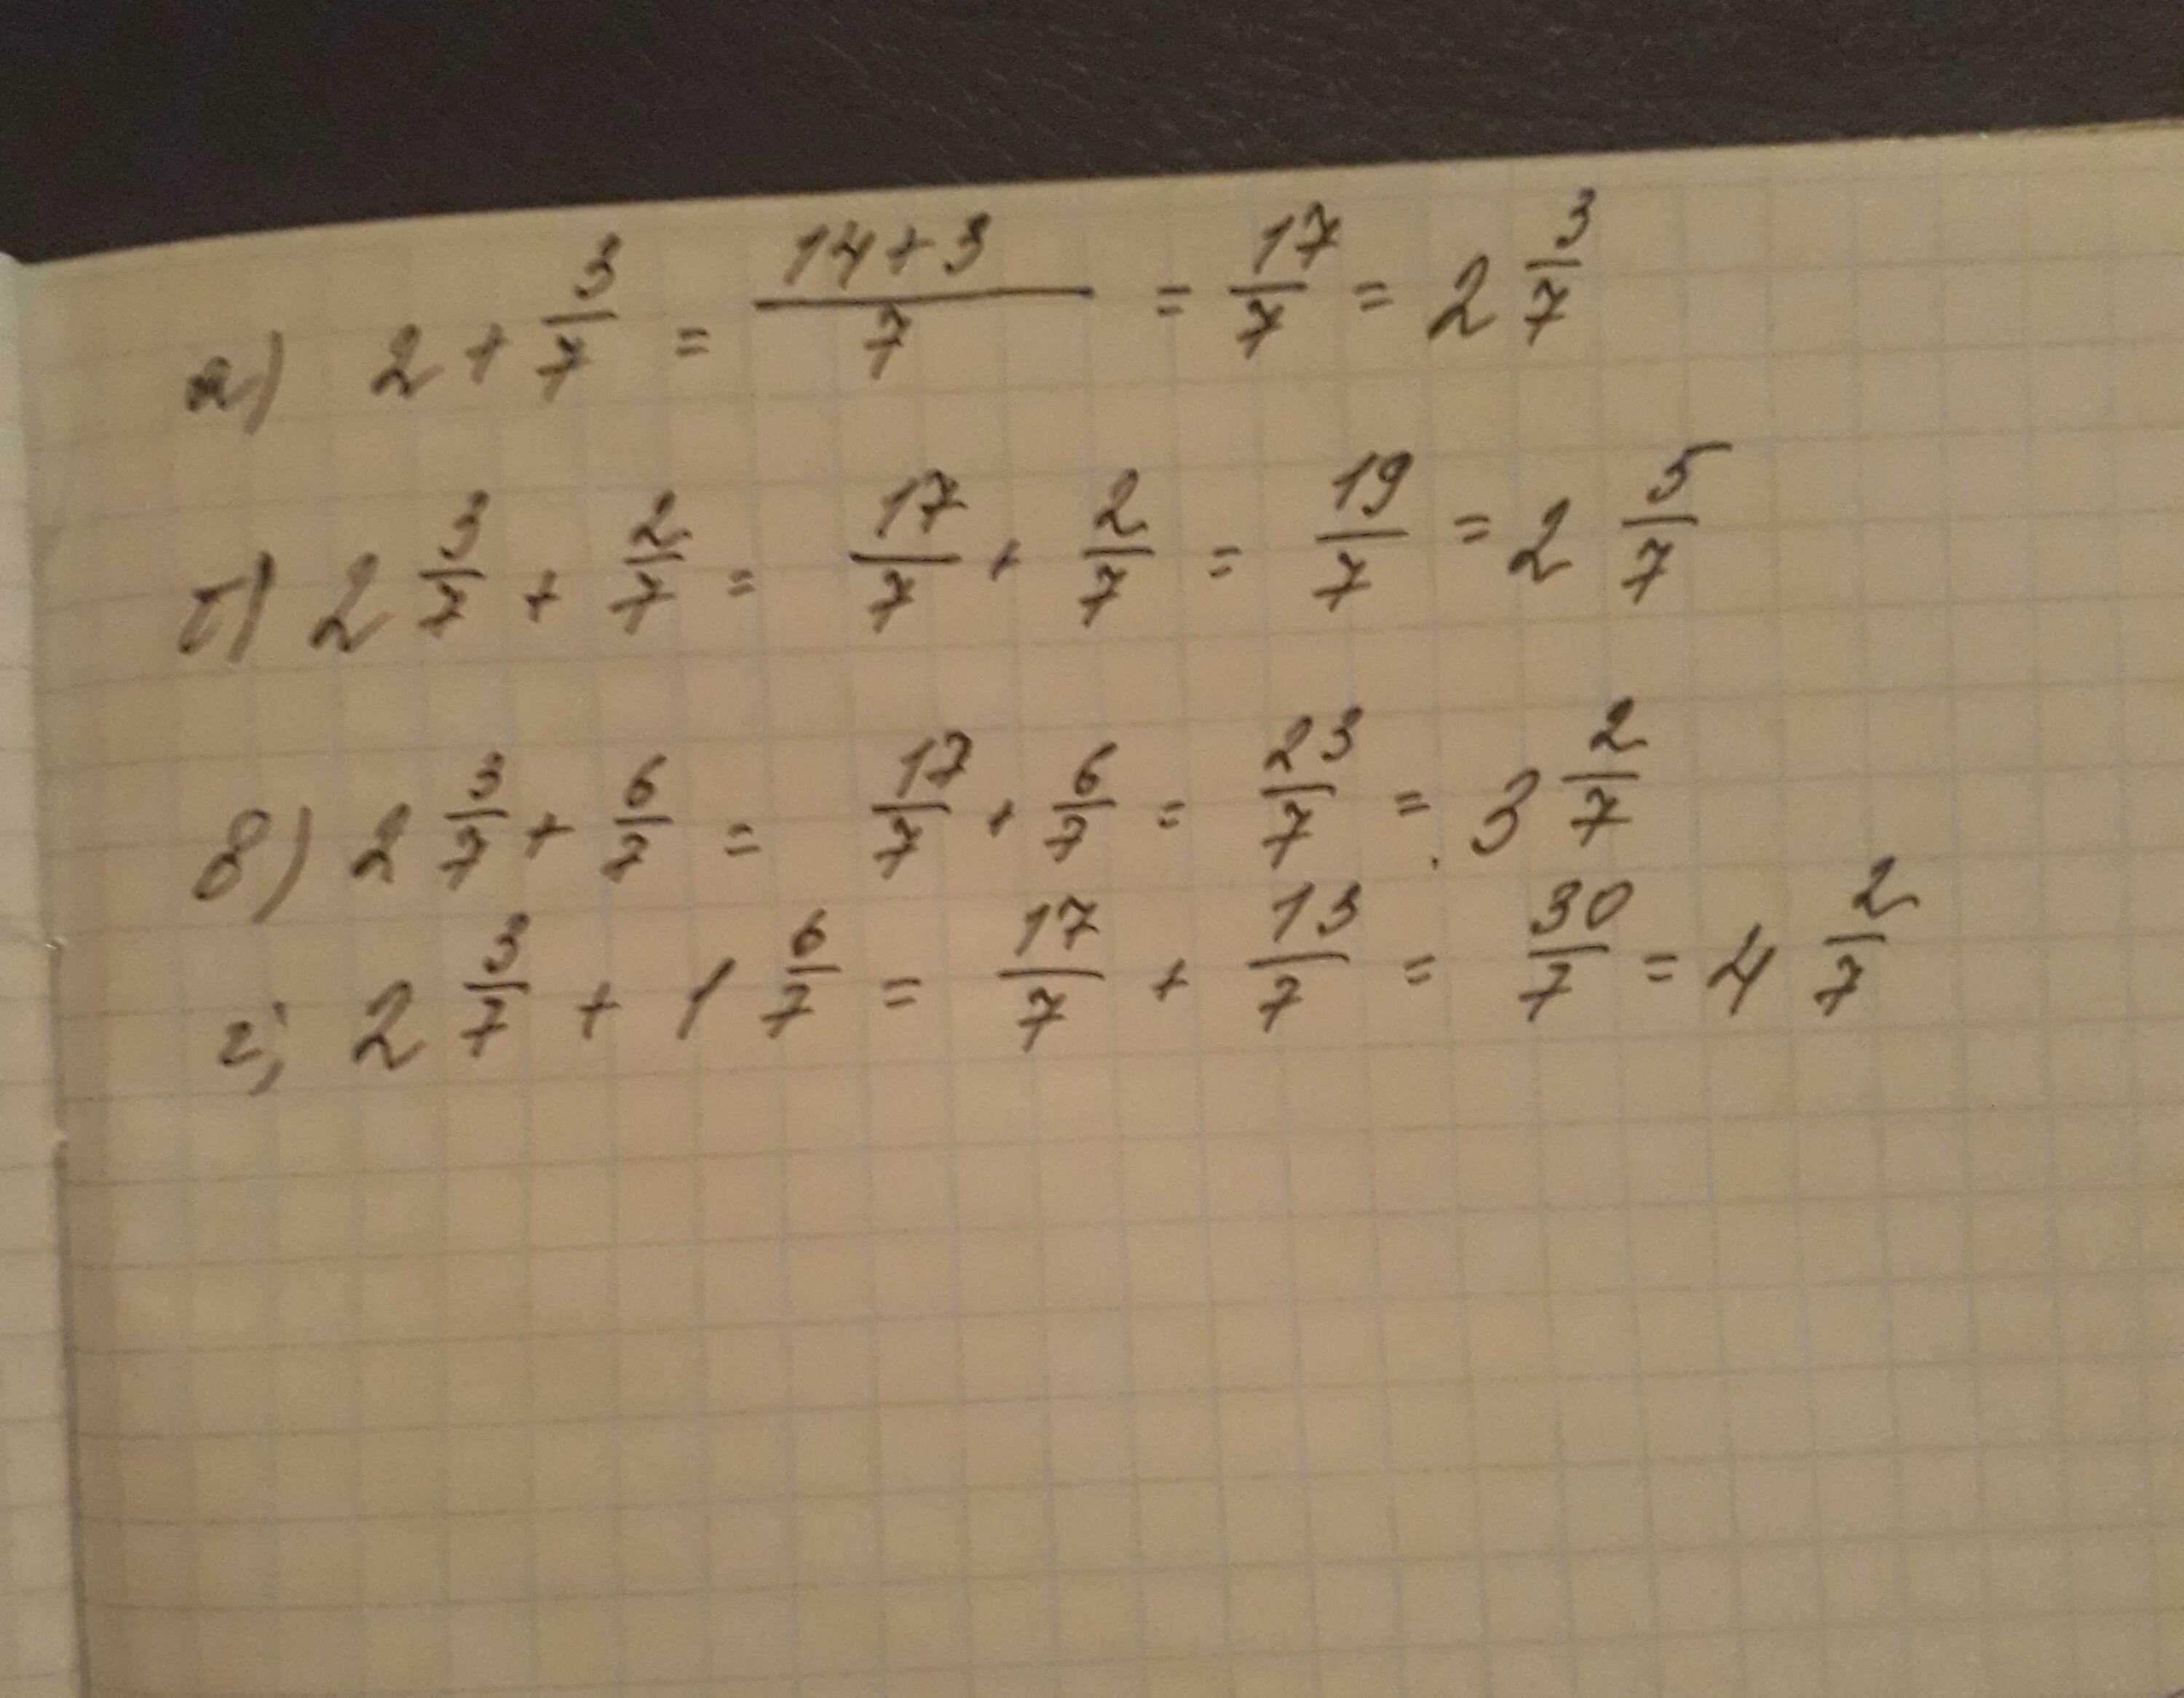 2 7 7 3 11 63. Вычислите 2/7. Вычислите 3/7:2. Вычислите 7 3 + 7 2. (−2)^7⋅6 Вычислите.